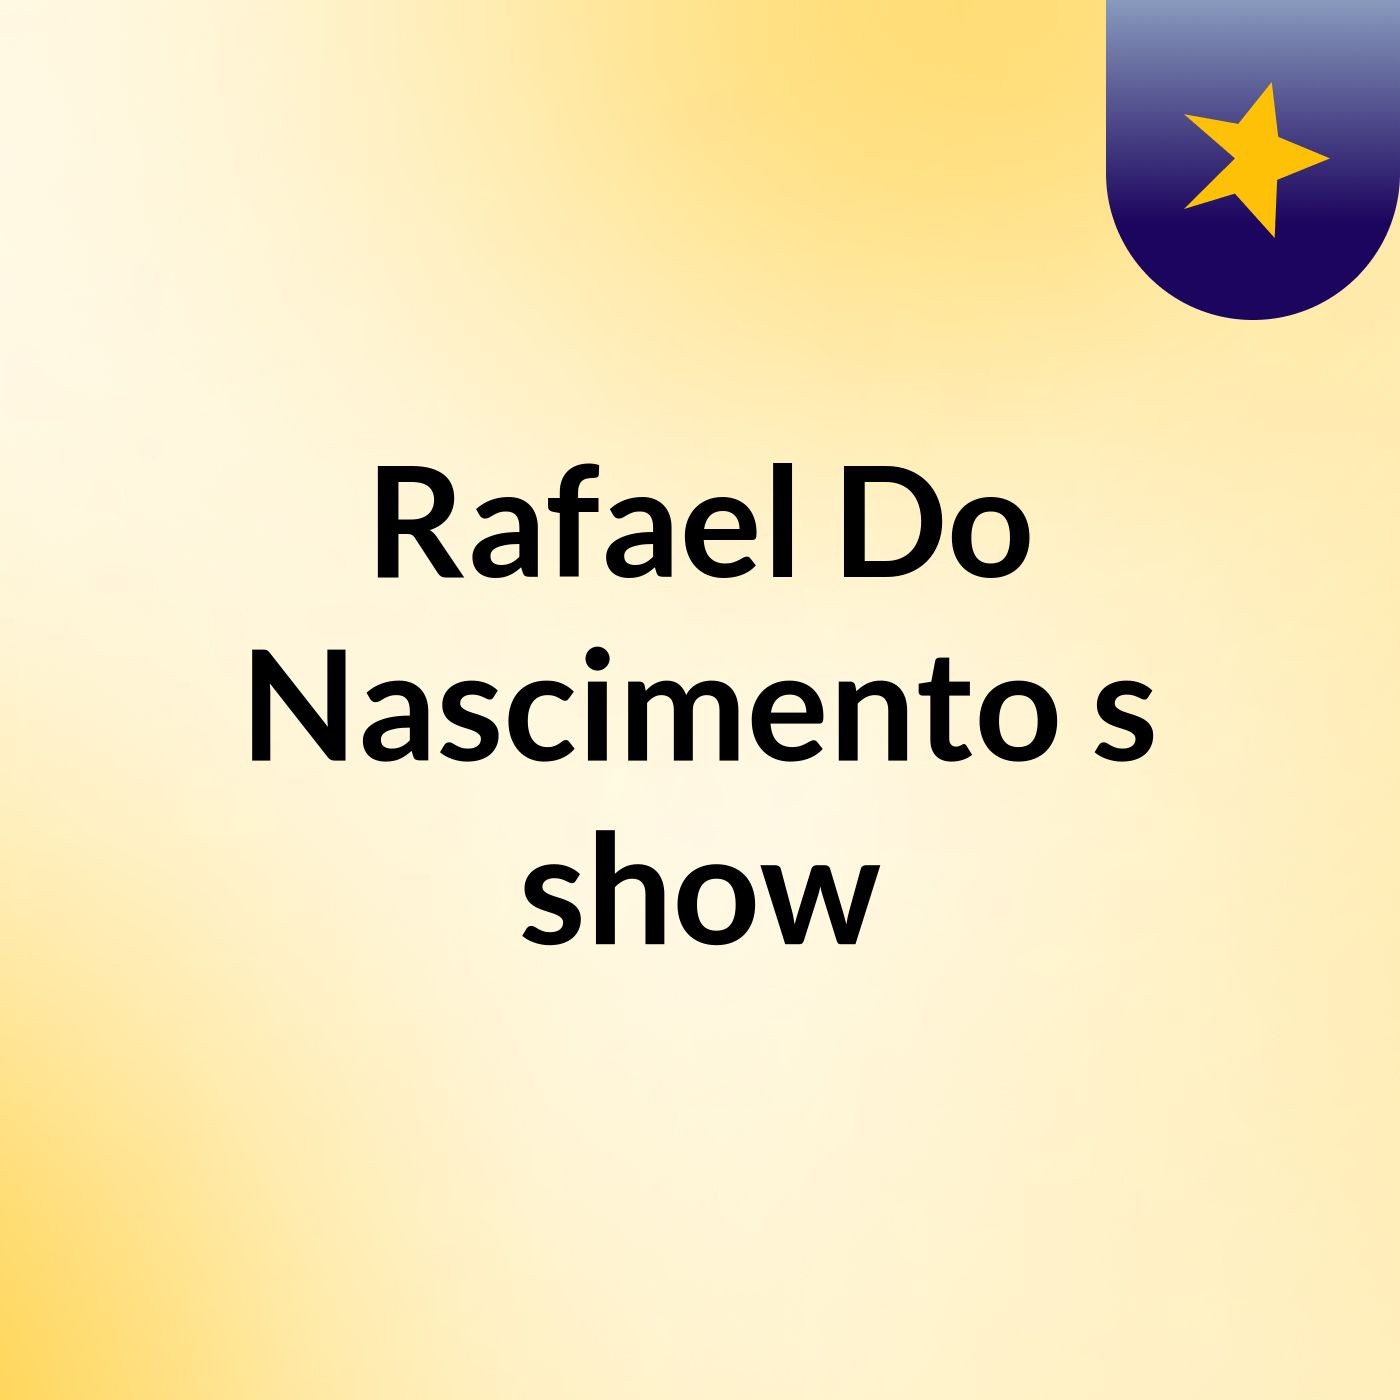 Rafael Do Nascimento's show